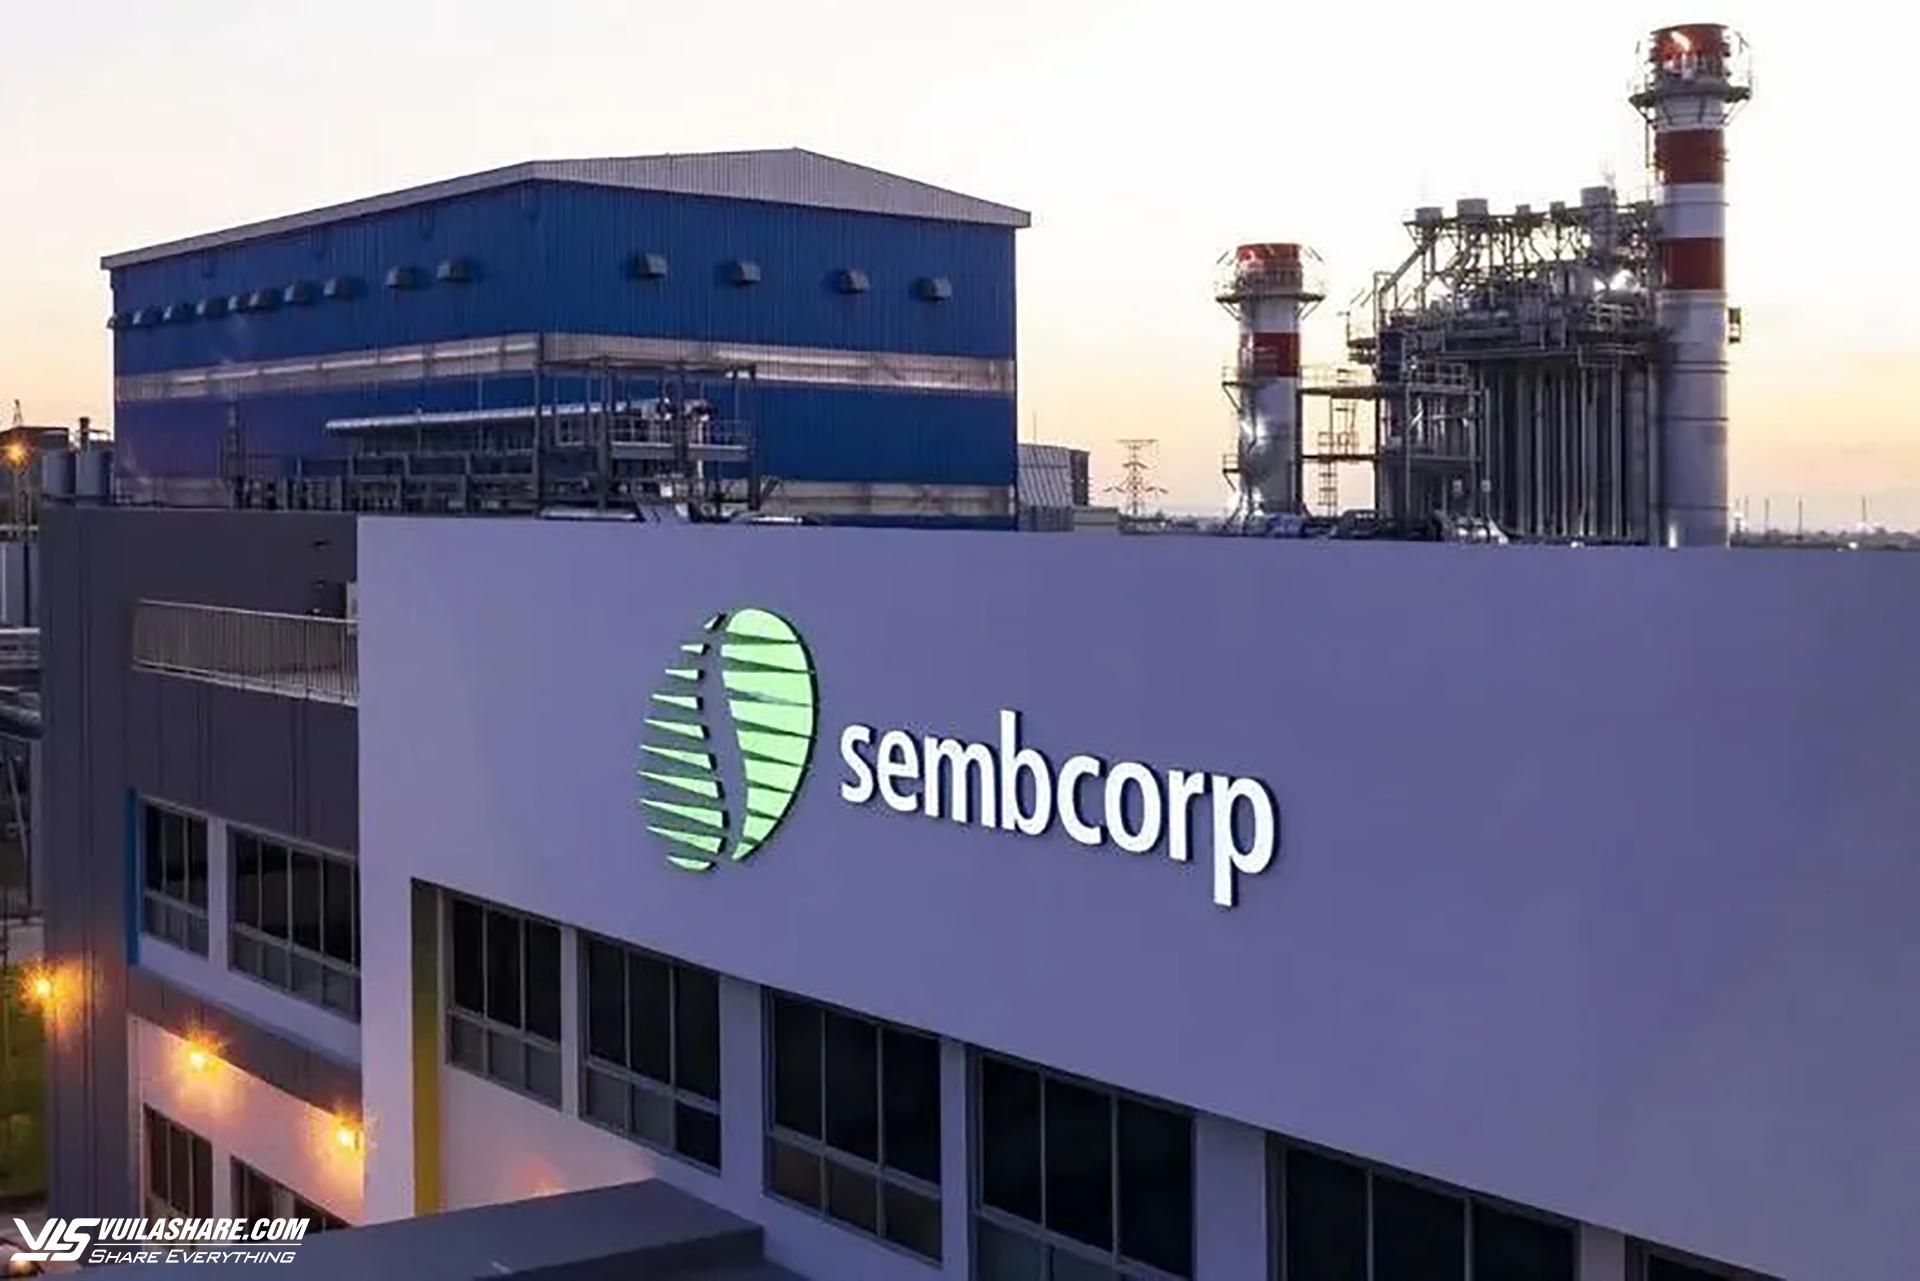 Sembcorp thuộc Top 30 công ty niêm yết lớn nhất trên sàn chứng khoán Singapore